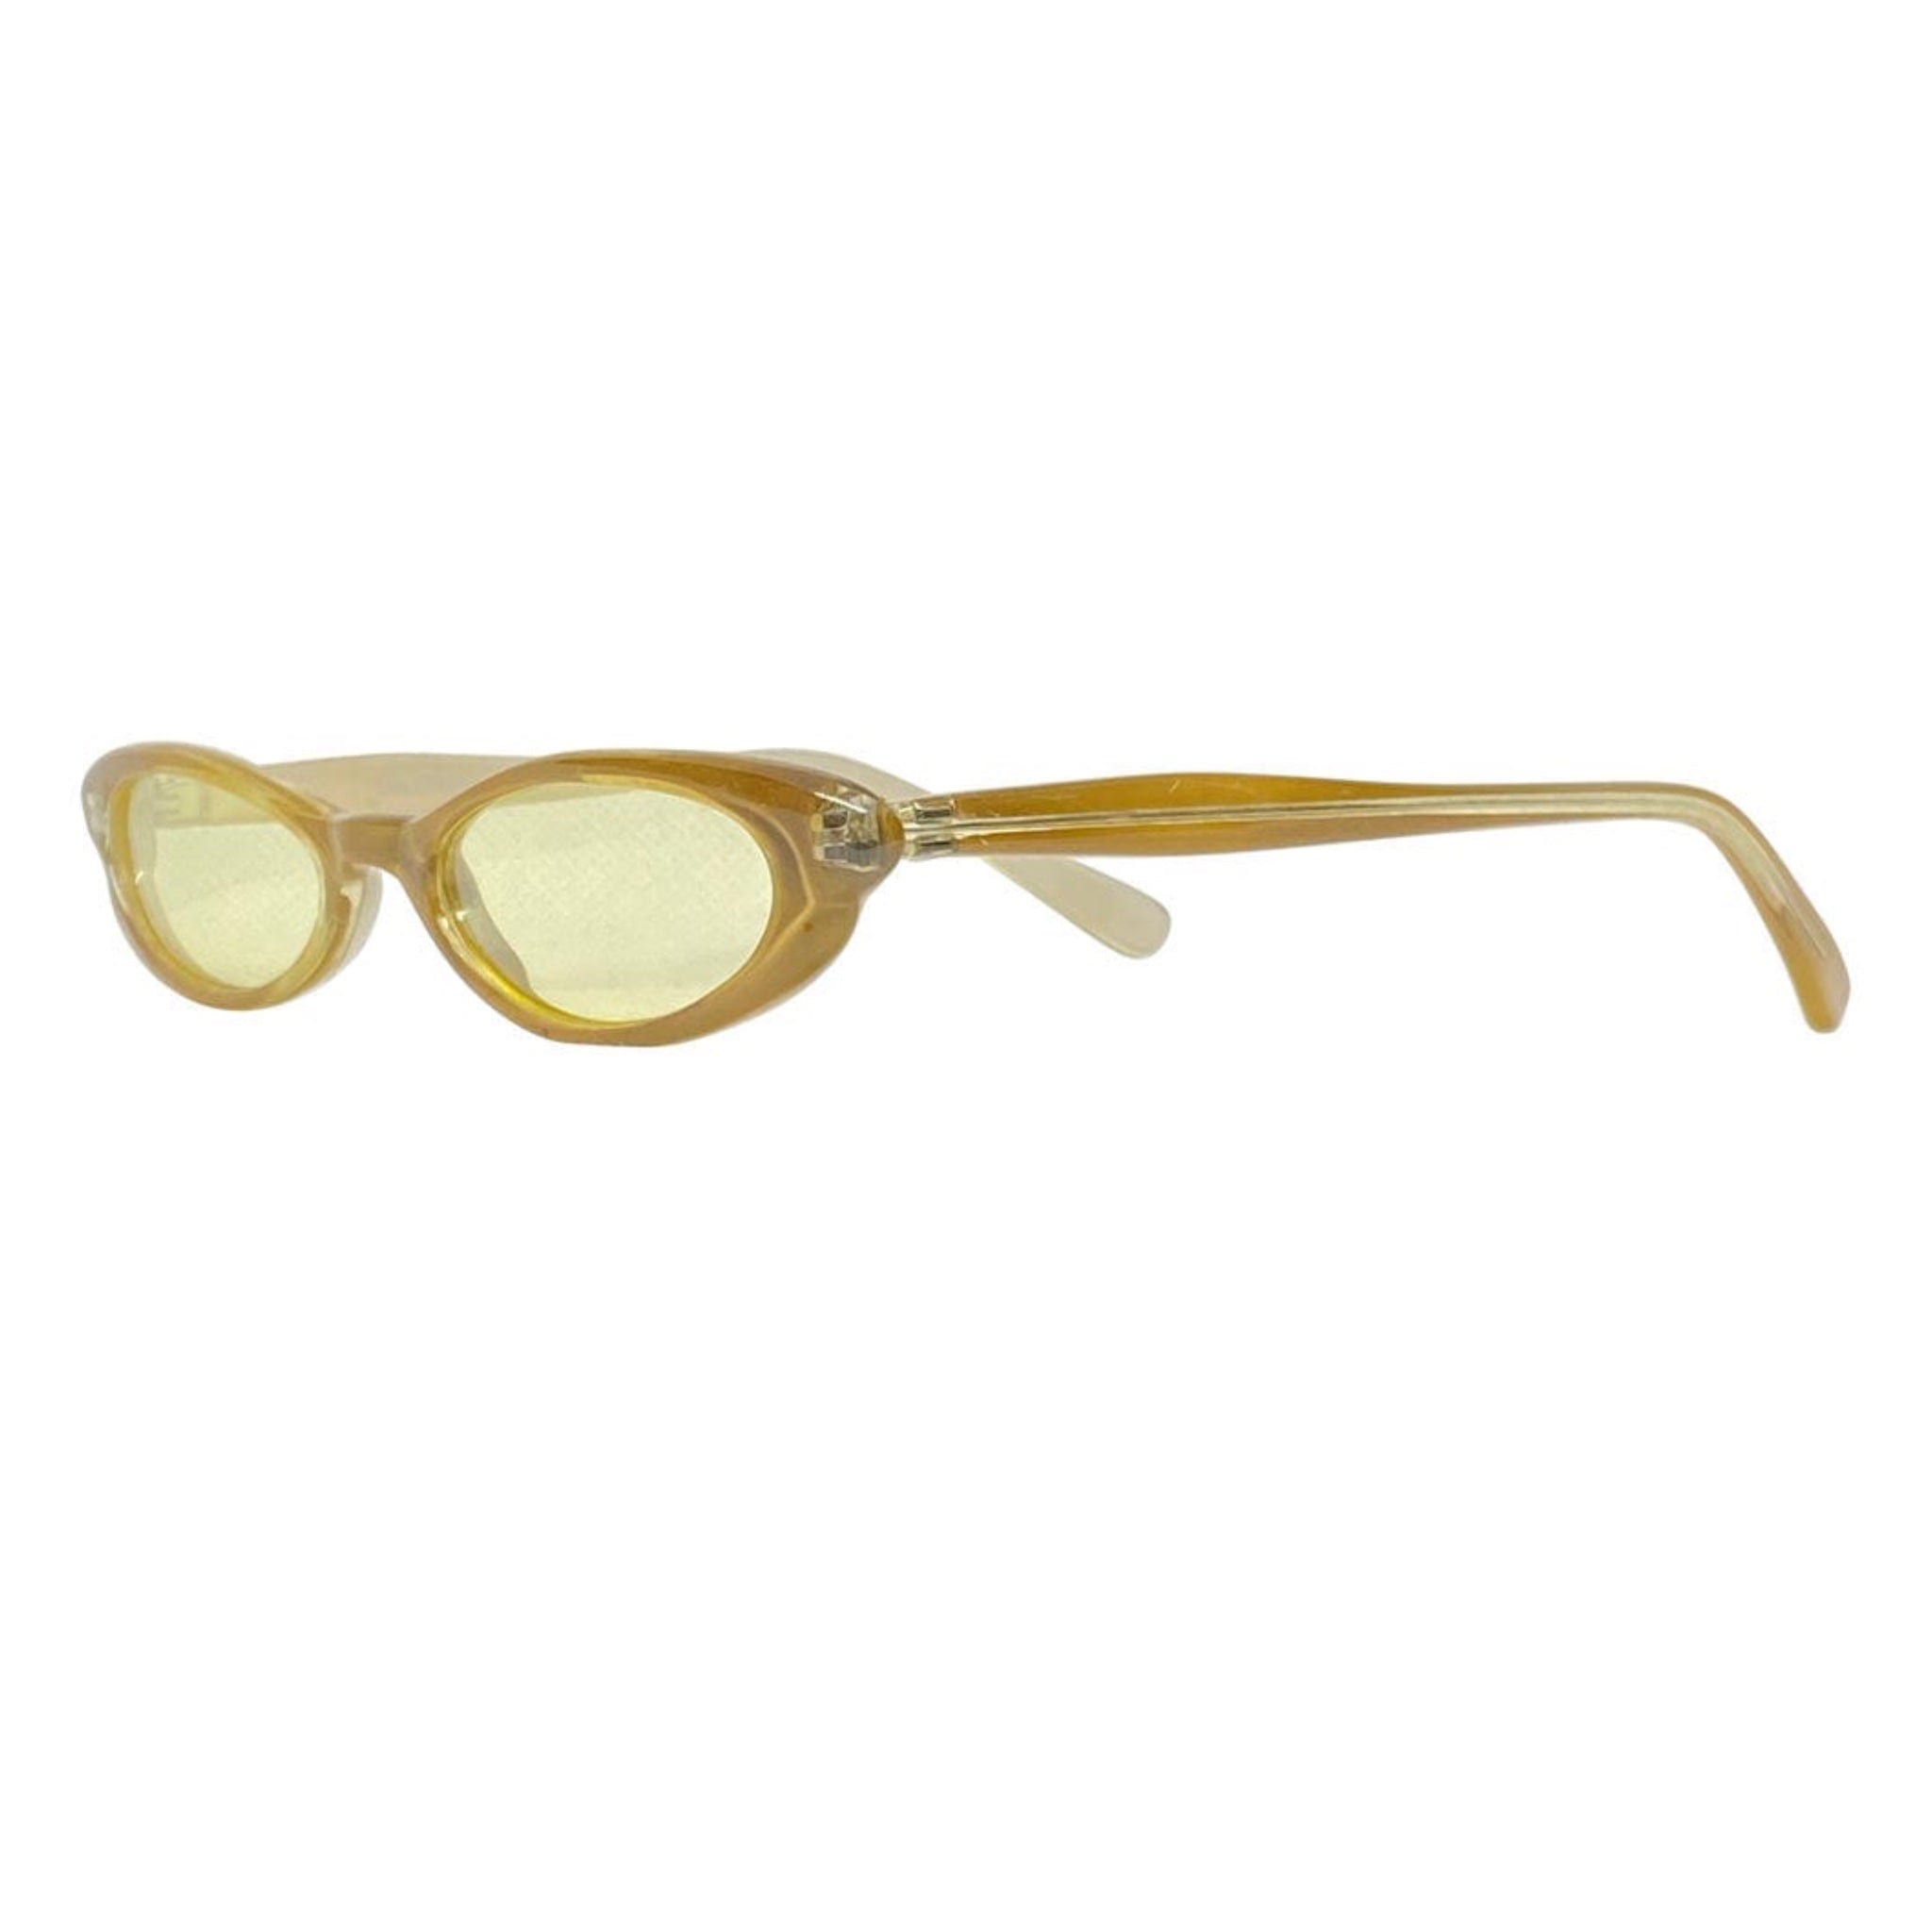 TALLY Amber Trending 90s Cat-Eye Sunglasses